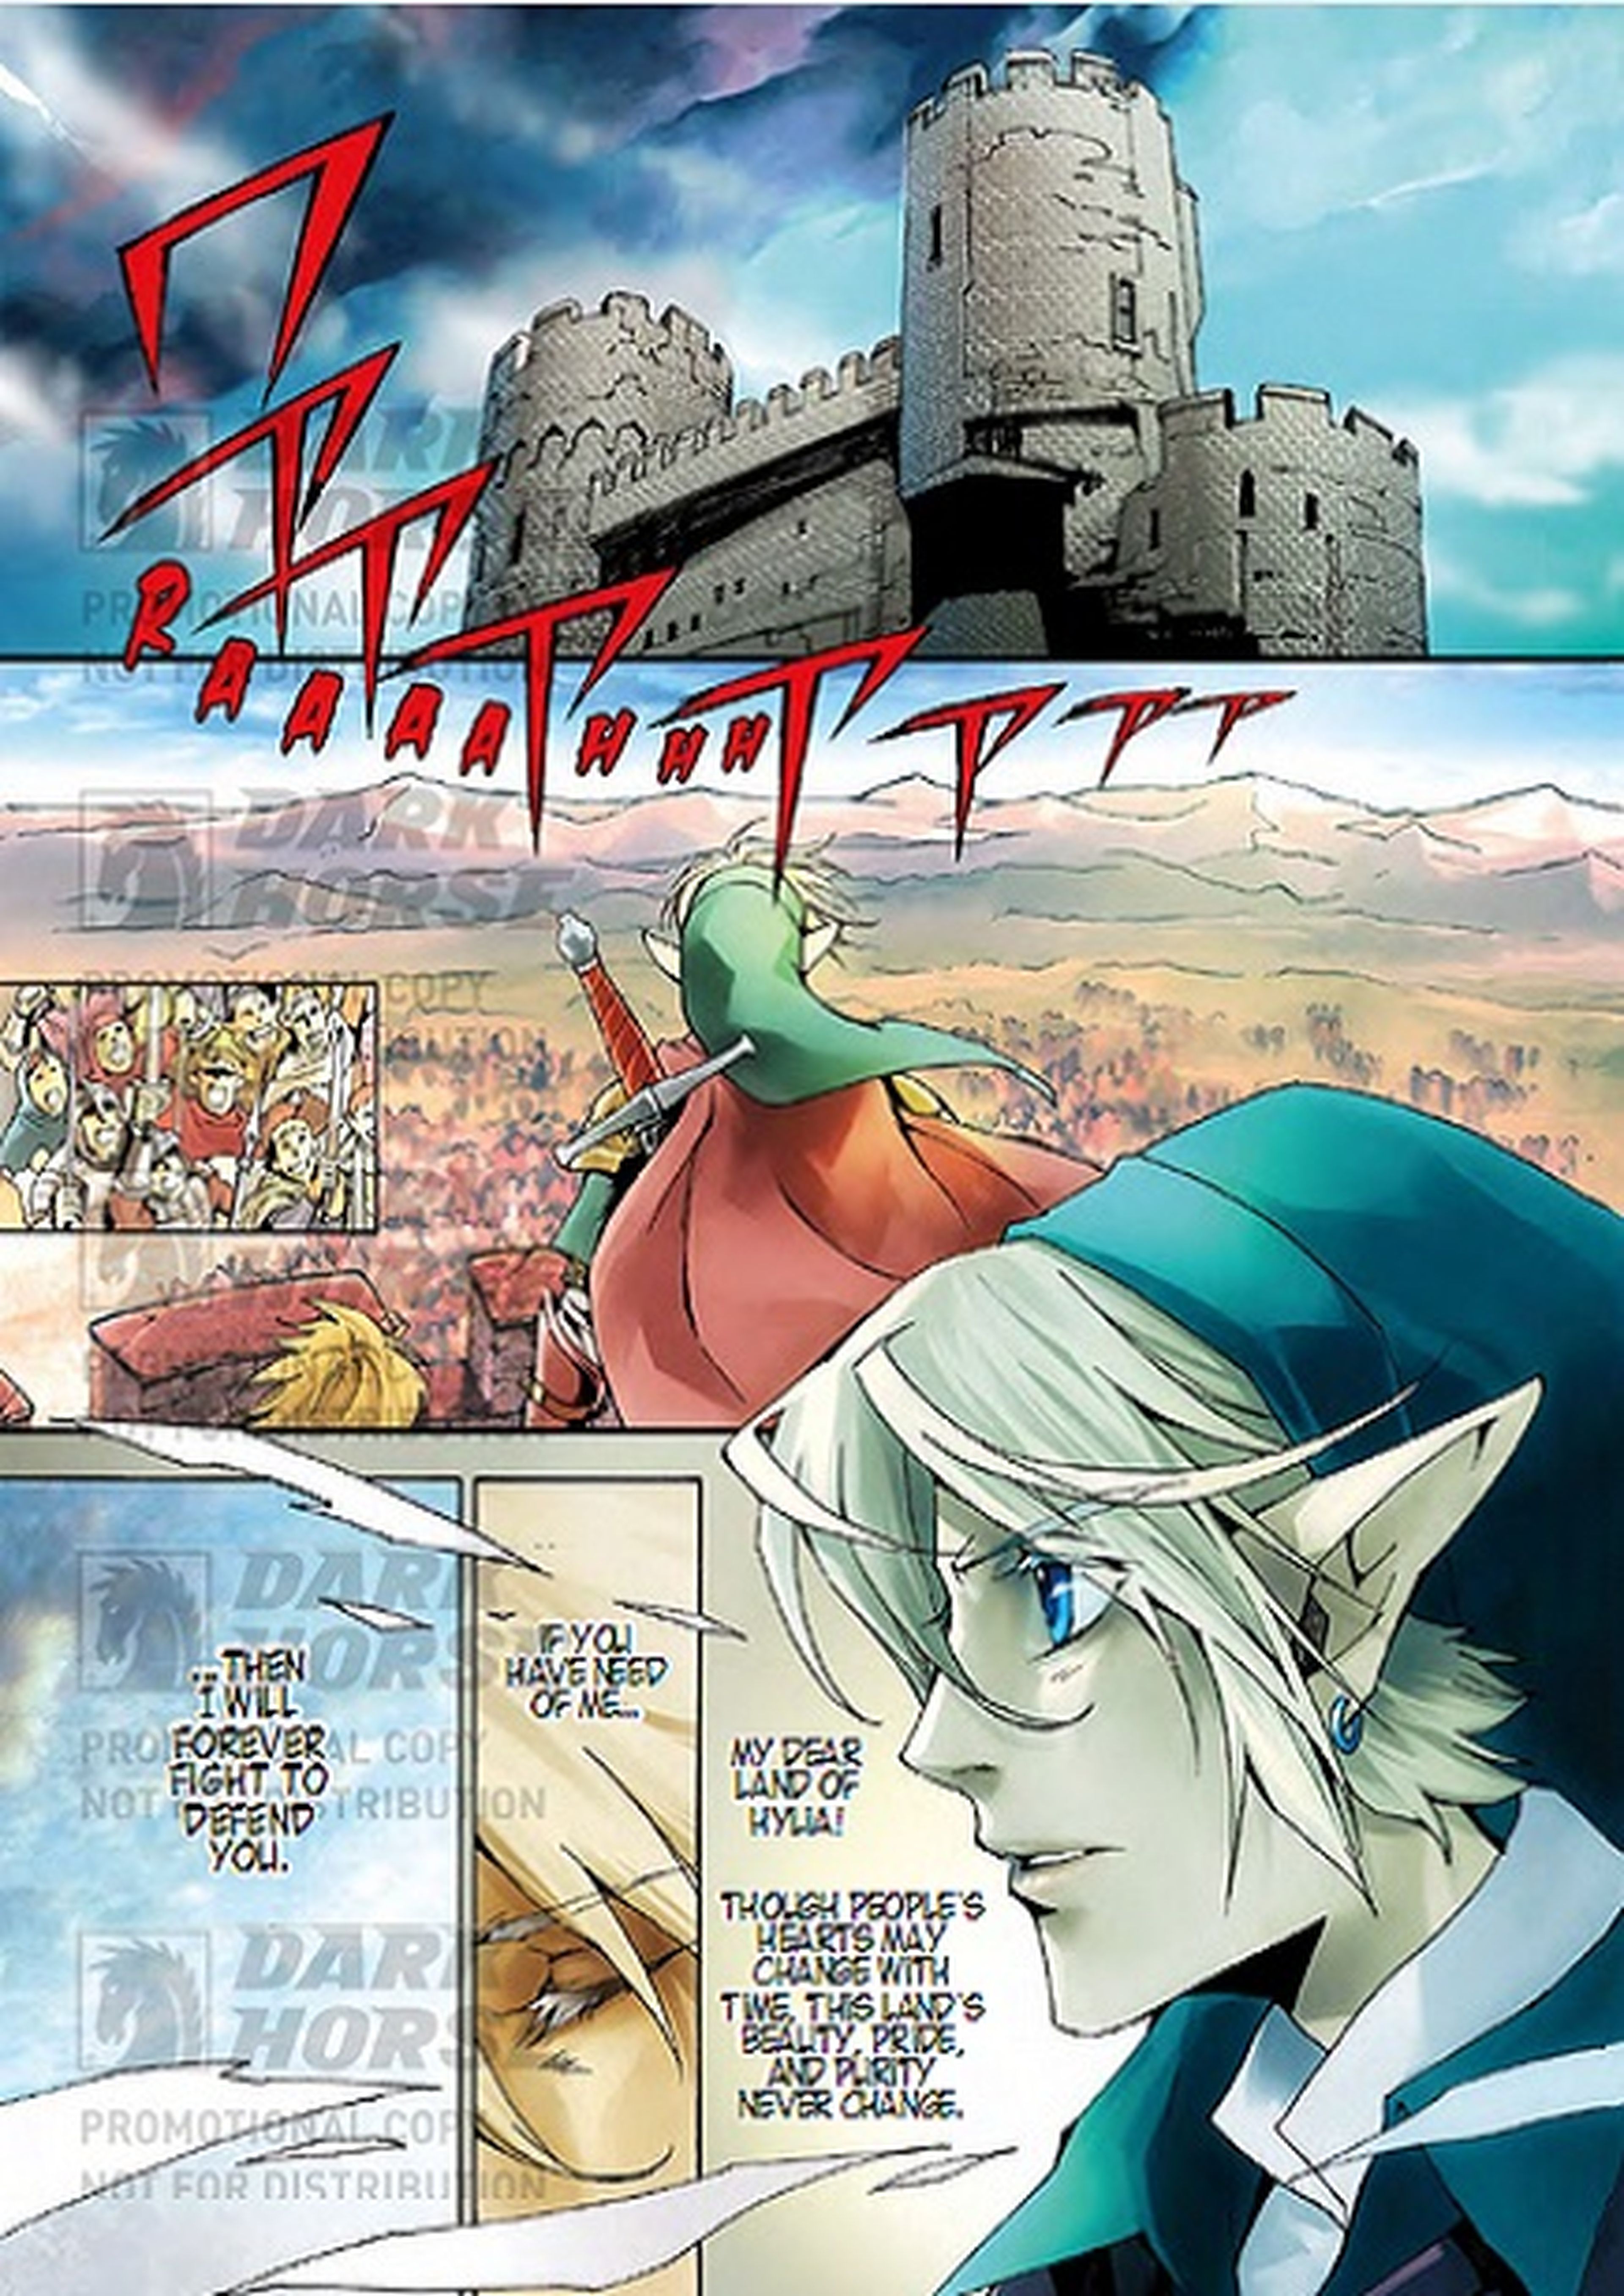 Manga de The Legend of Zelda en Hyrule Historia